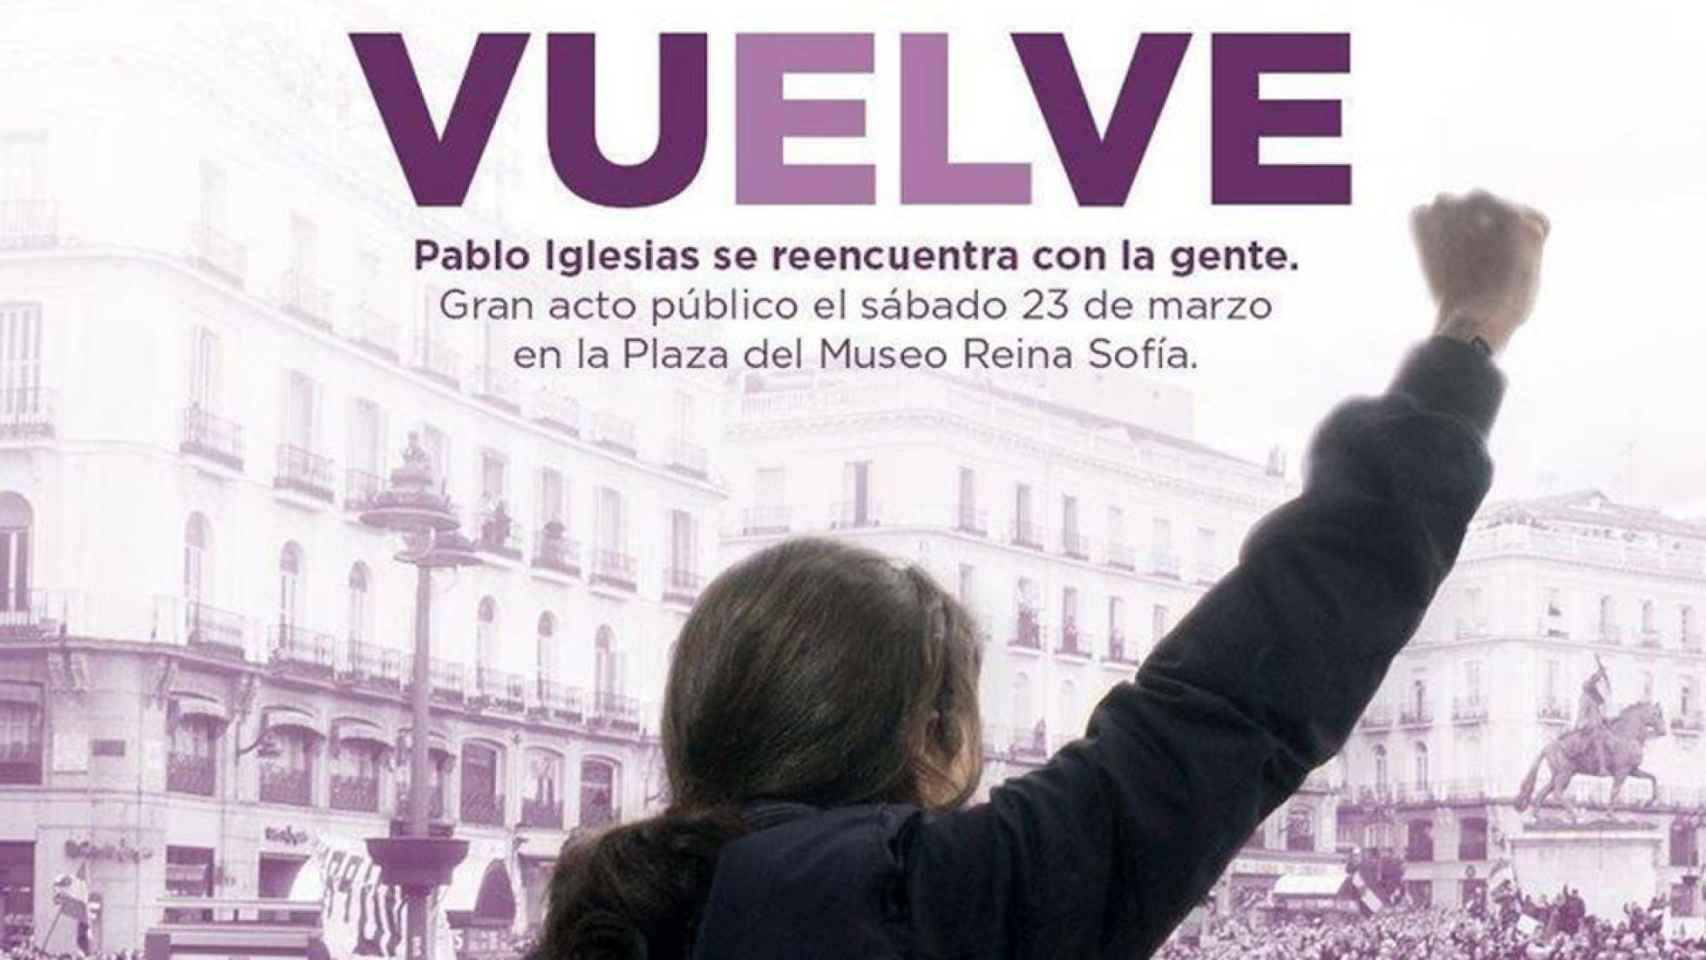 Cartel difundido por 'Podemos' para la vuelta de Pablo Iglesias.